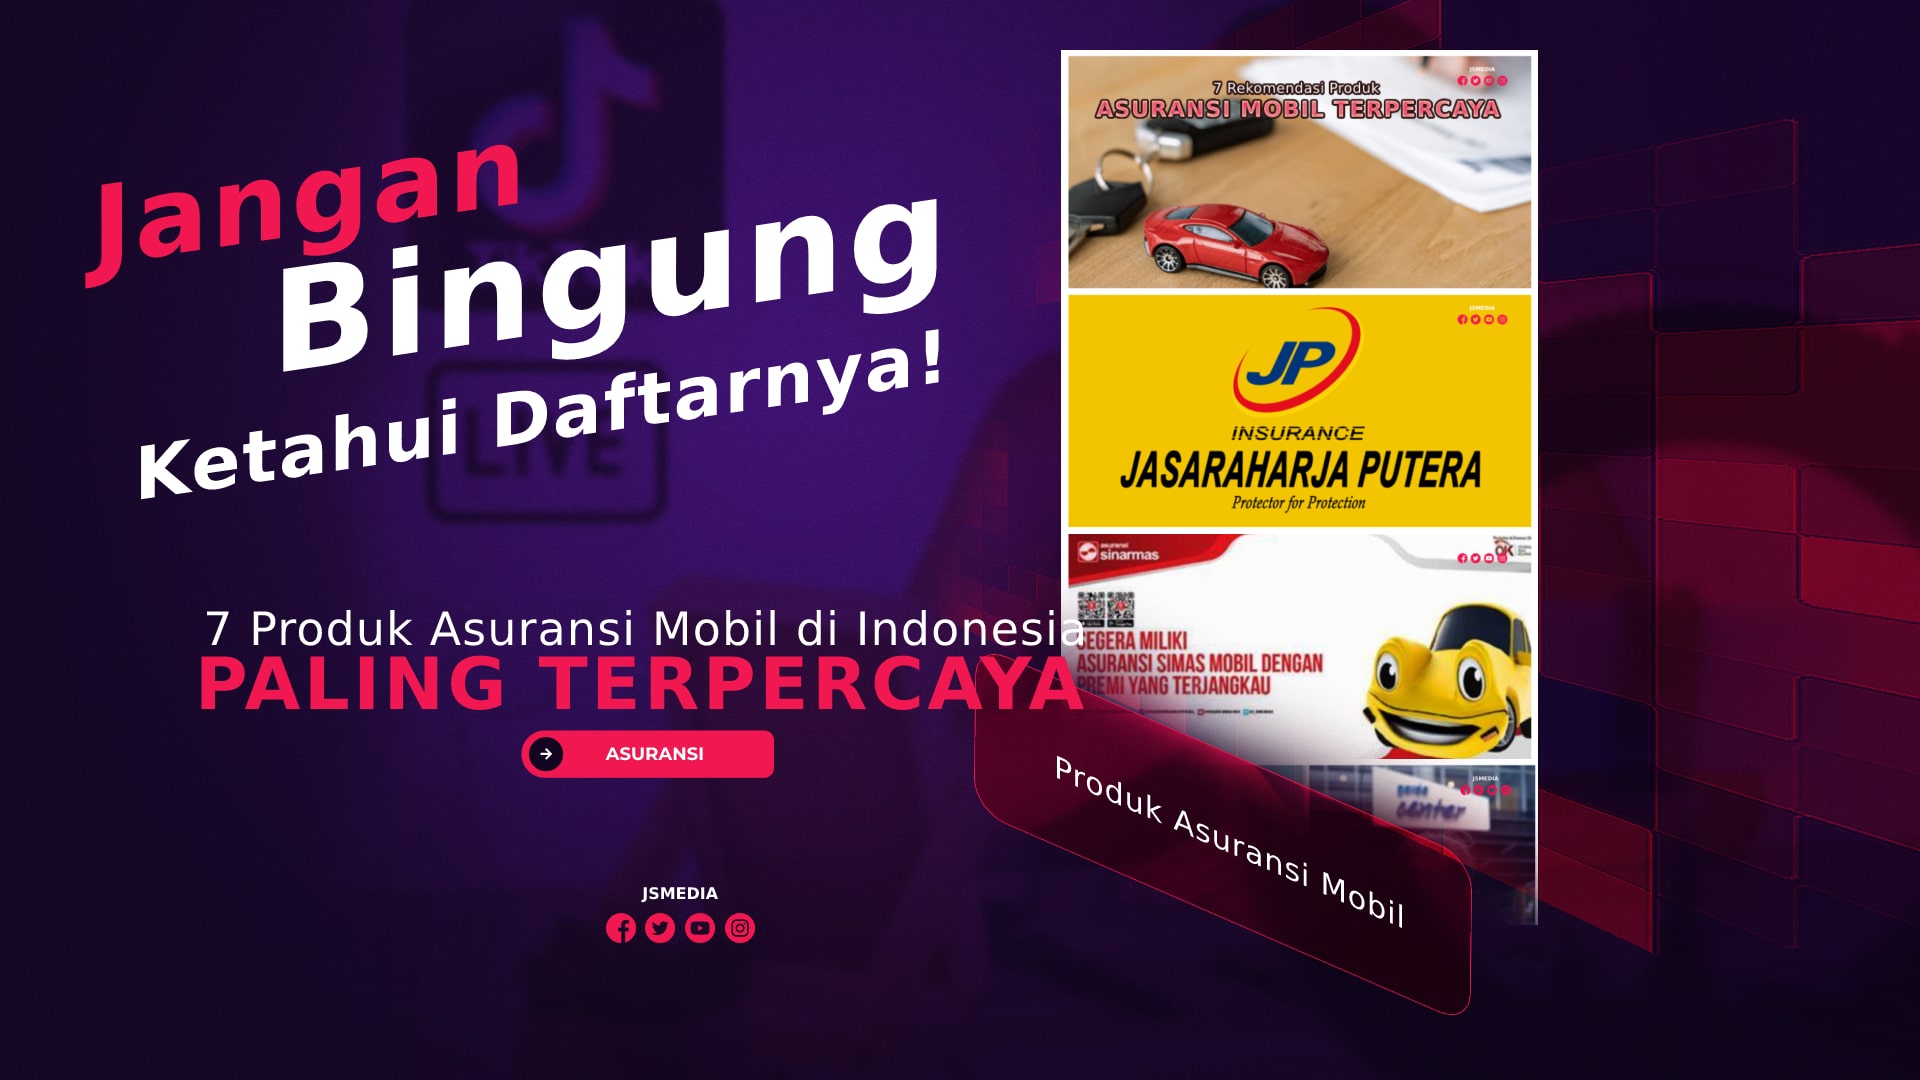 7 Produk Asuransi Mobil Paling Terpercaya di Indonesia, Jangan Bingung Ketahui Daftarnya!